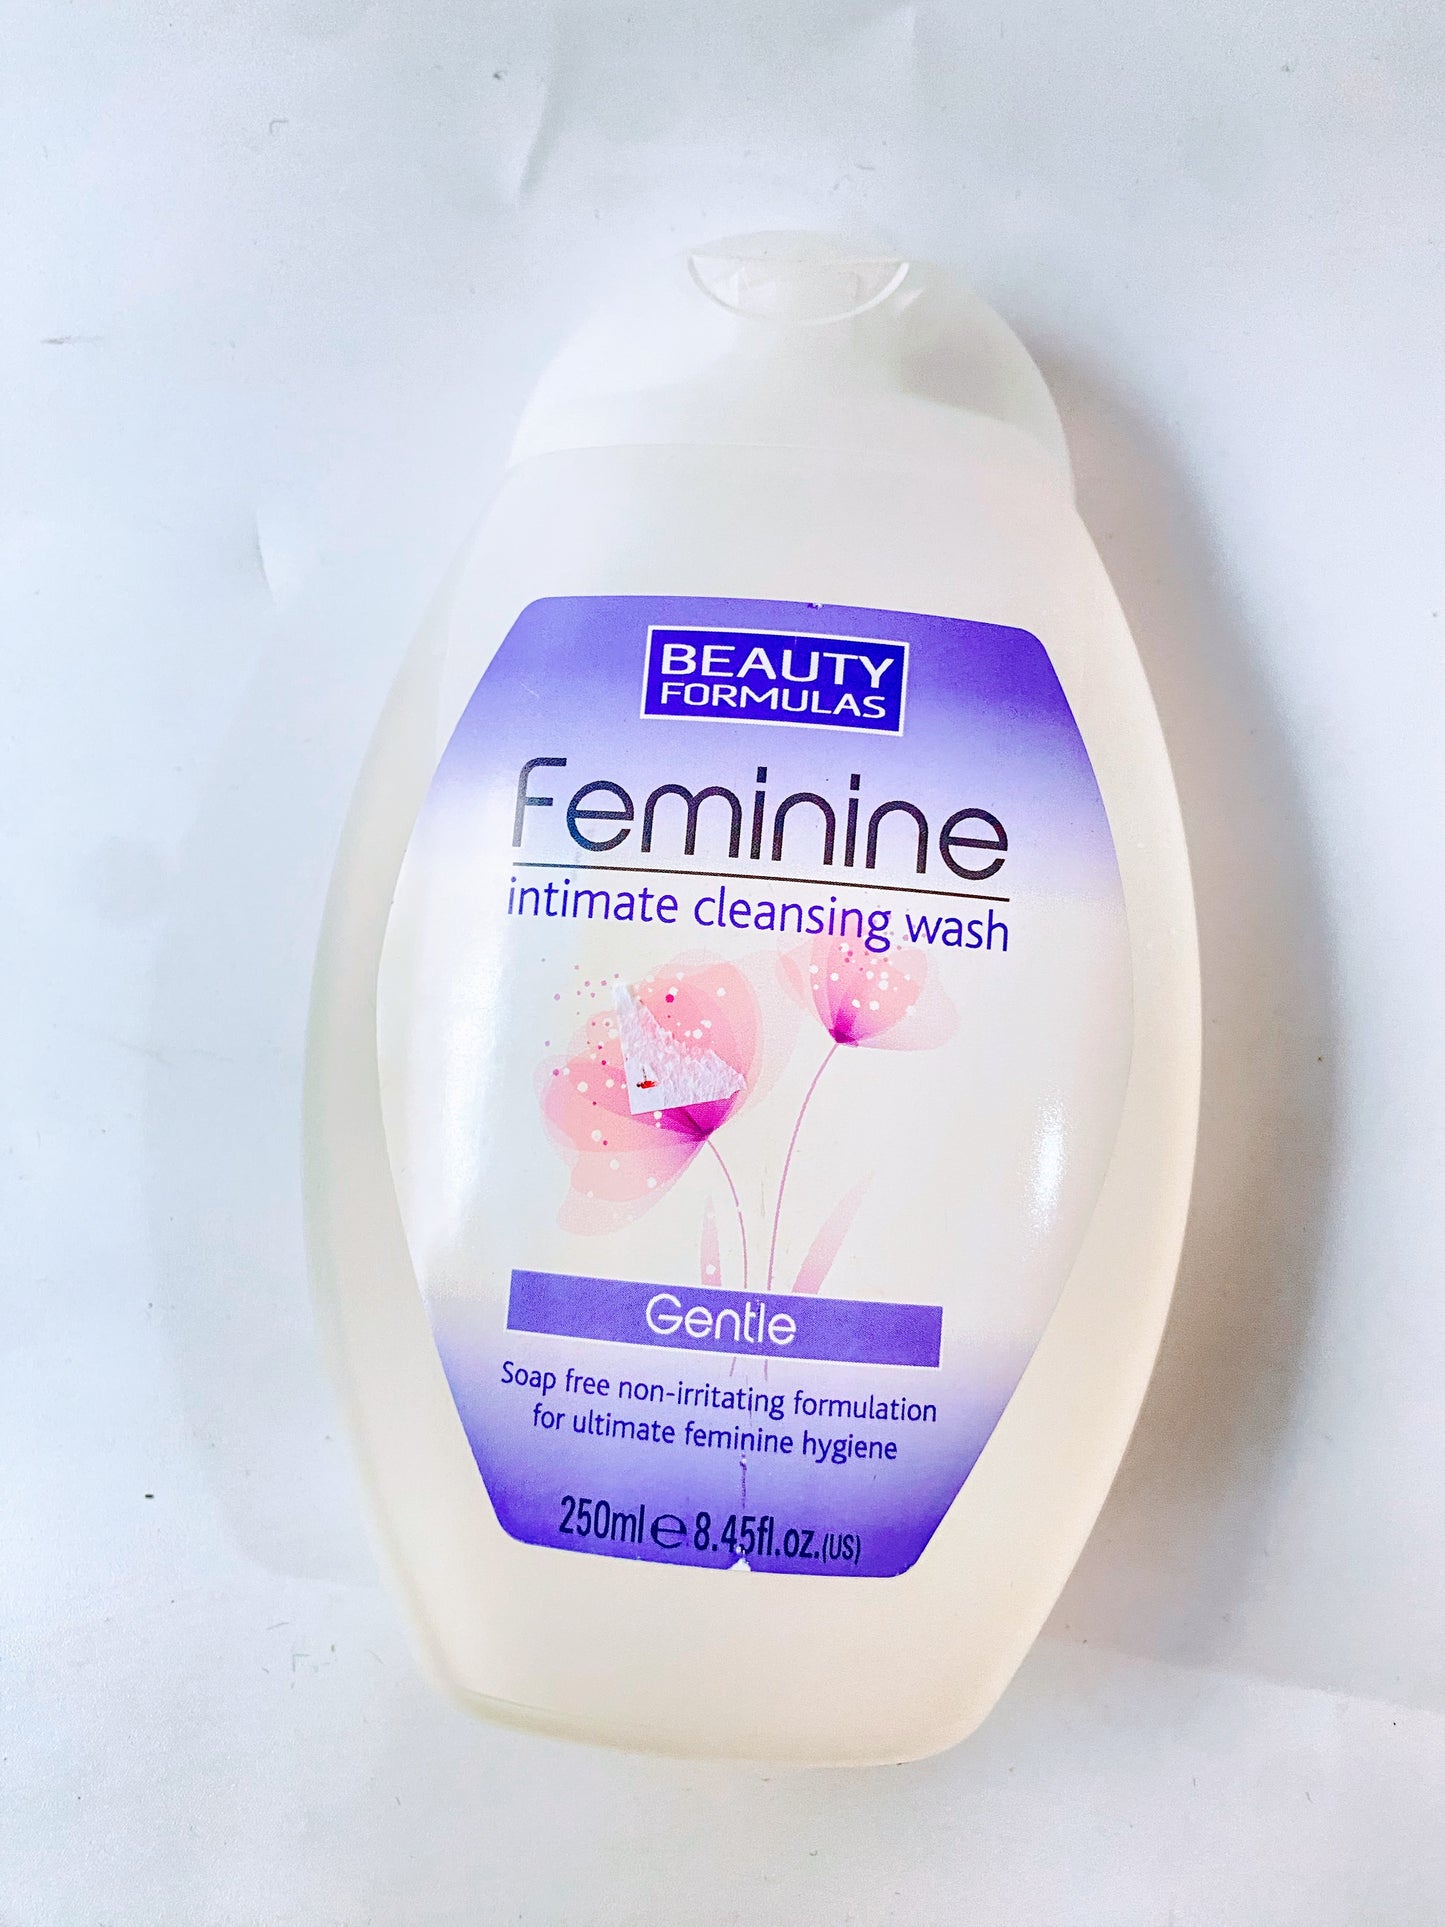 Beauty Formulas Feminine Intimate Cleansing Wash - Gentle